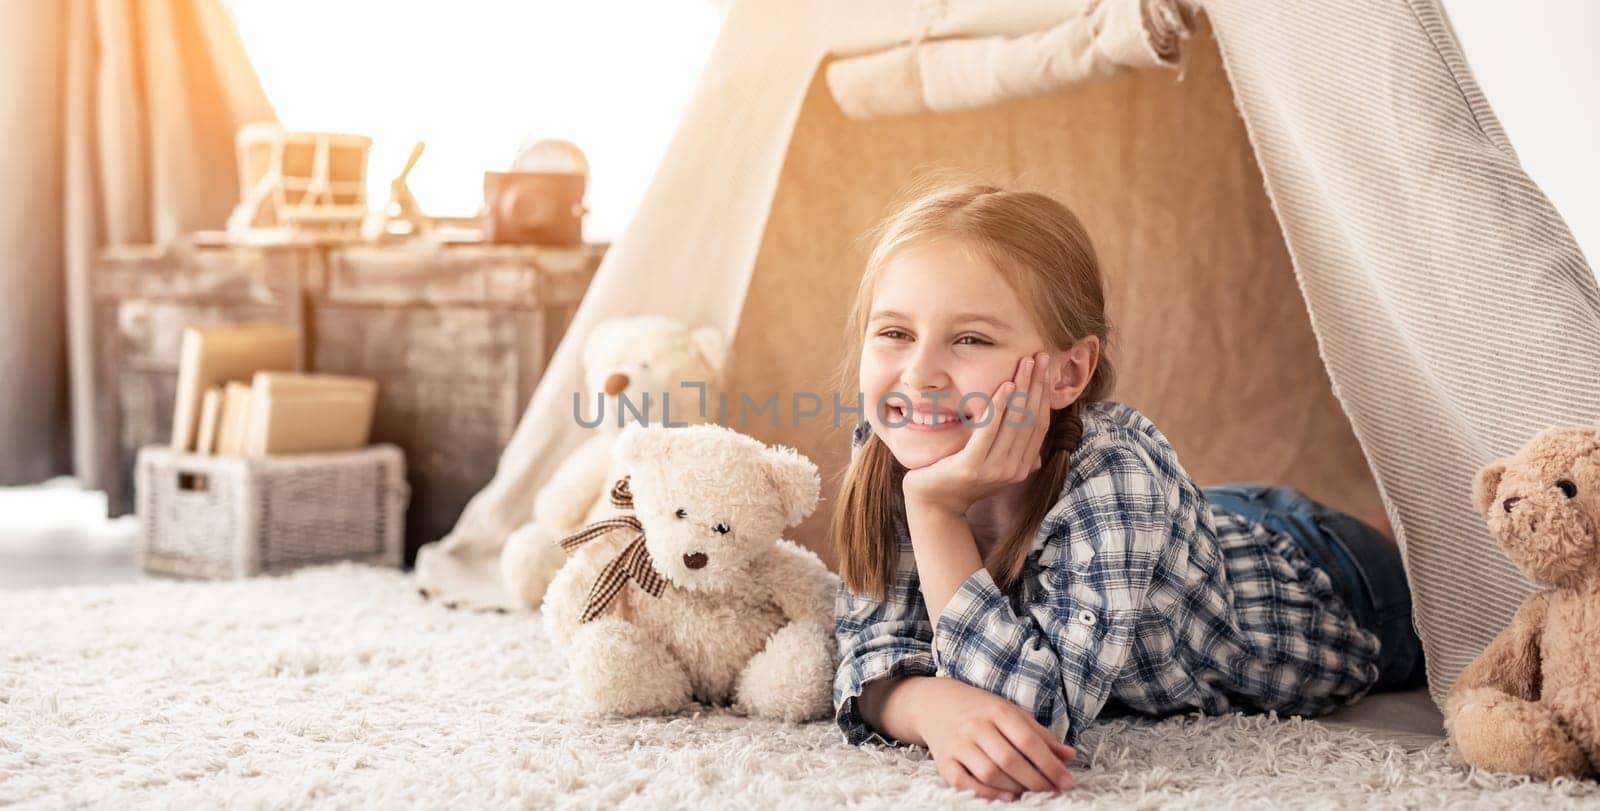 Little girl lying in wigwam with teddies by GekaSkr